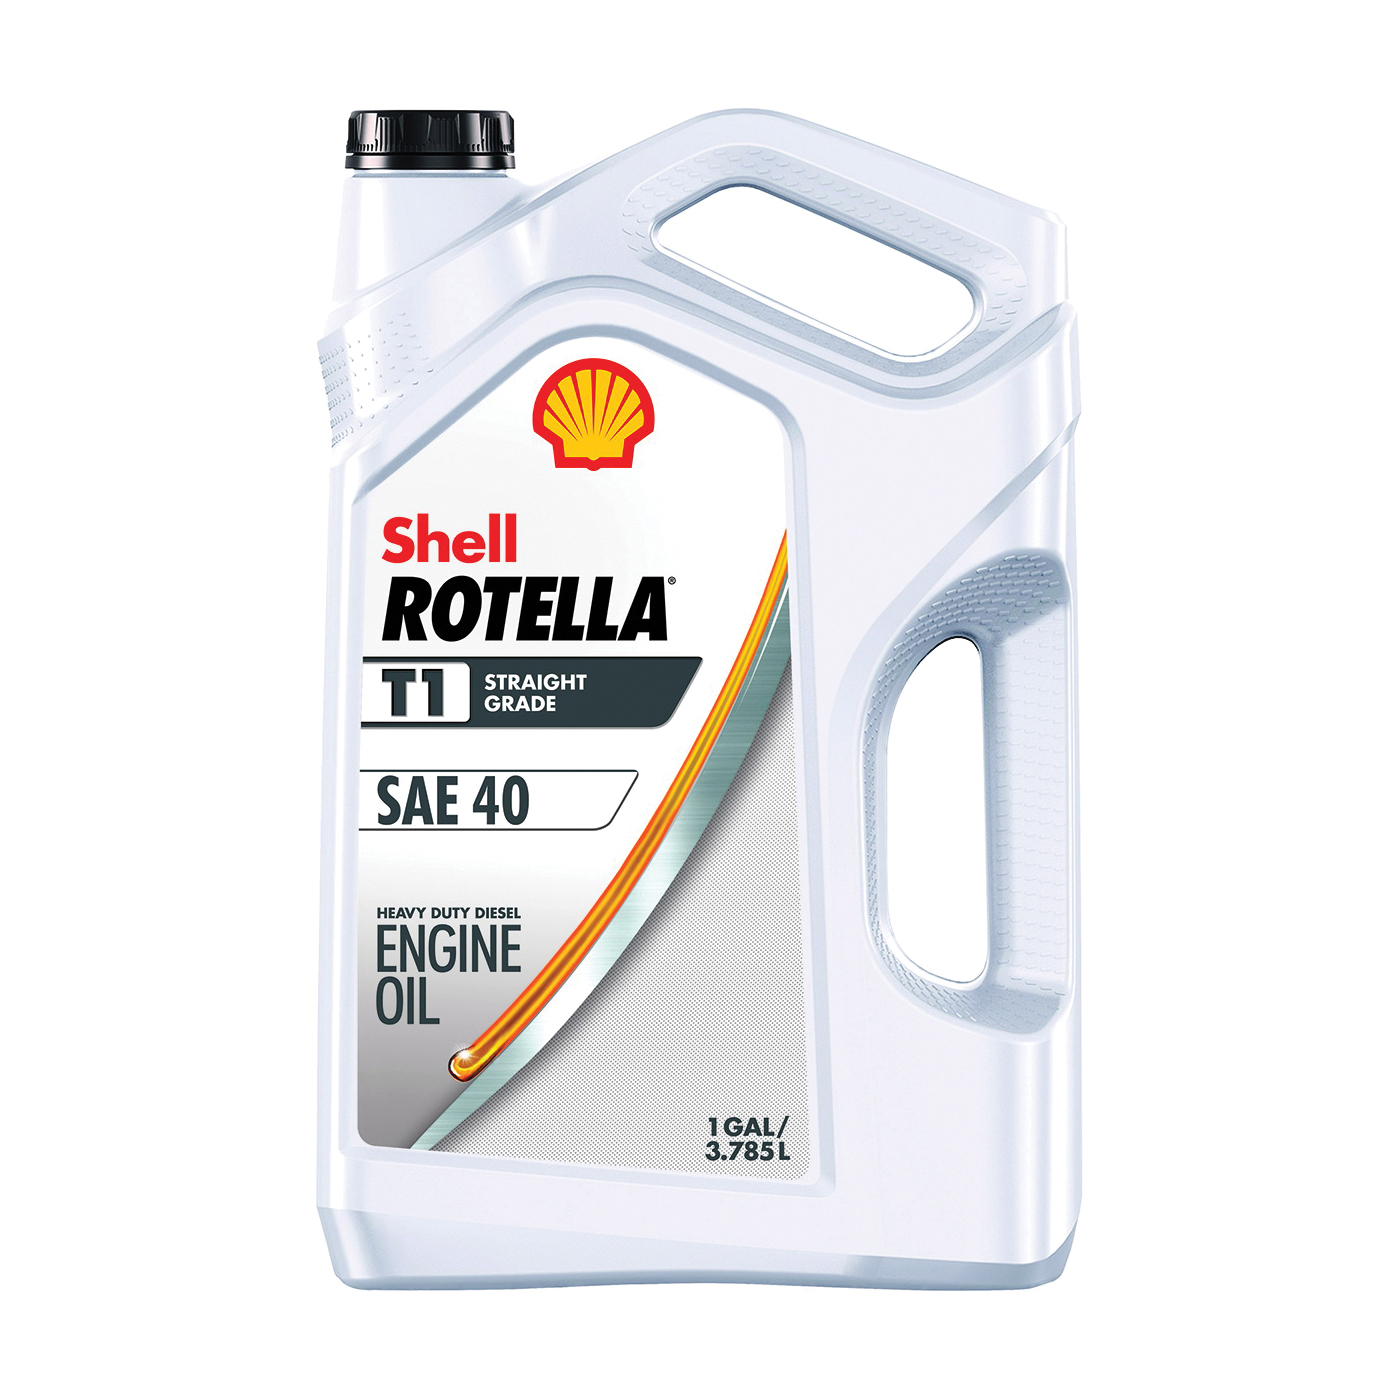 Shell Rotella 550045381